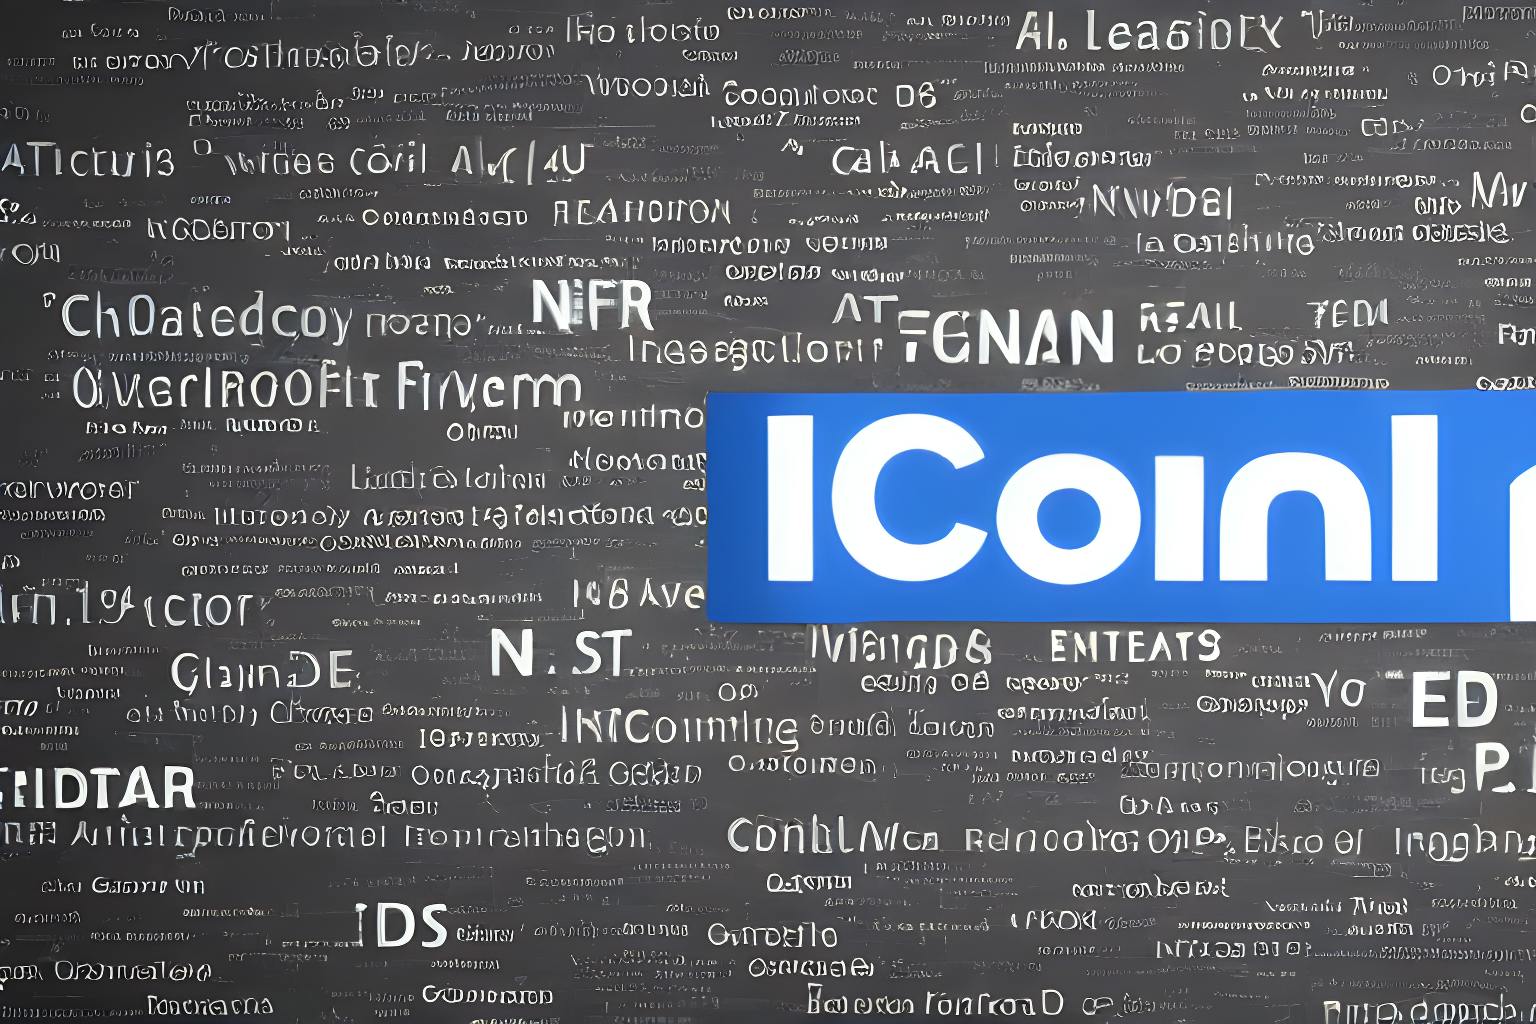 Работа с ICANN: мой опыт